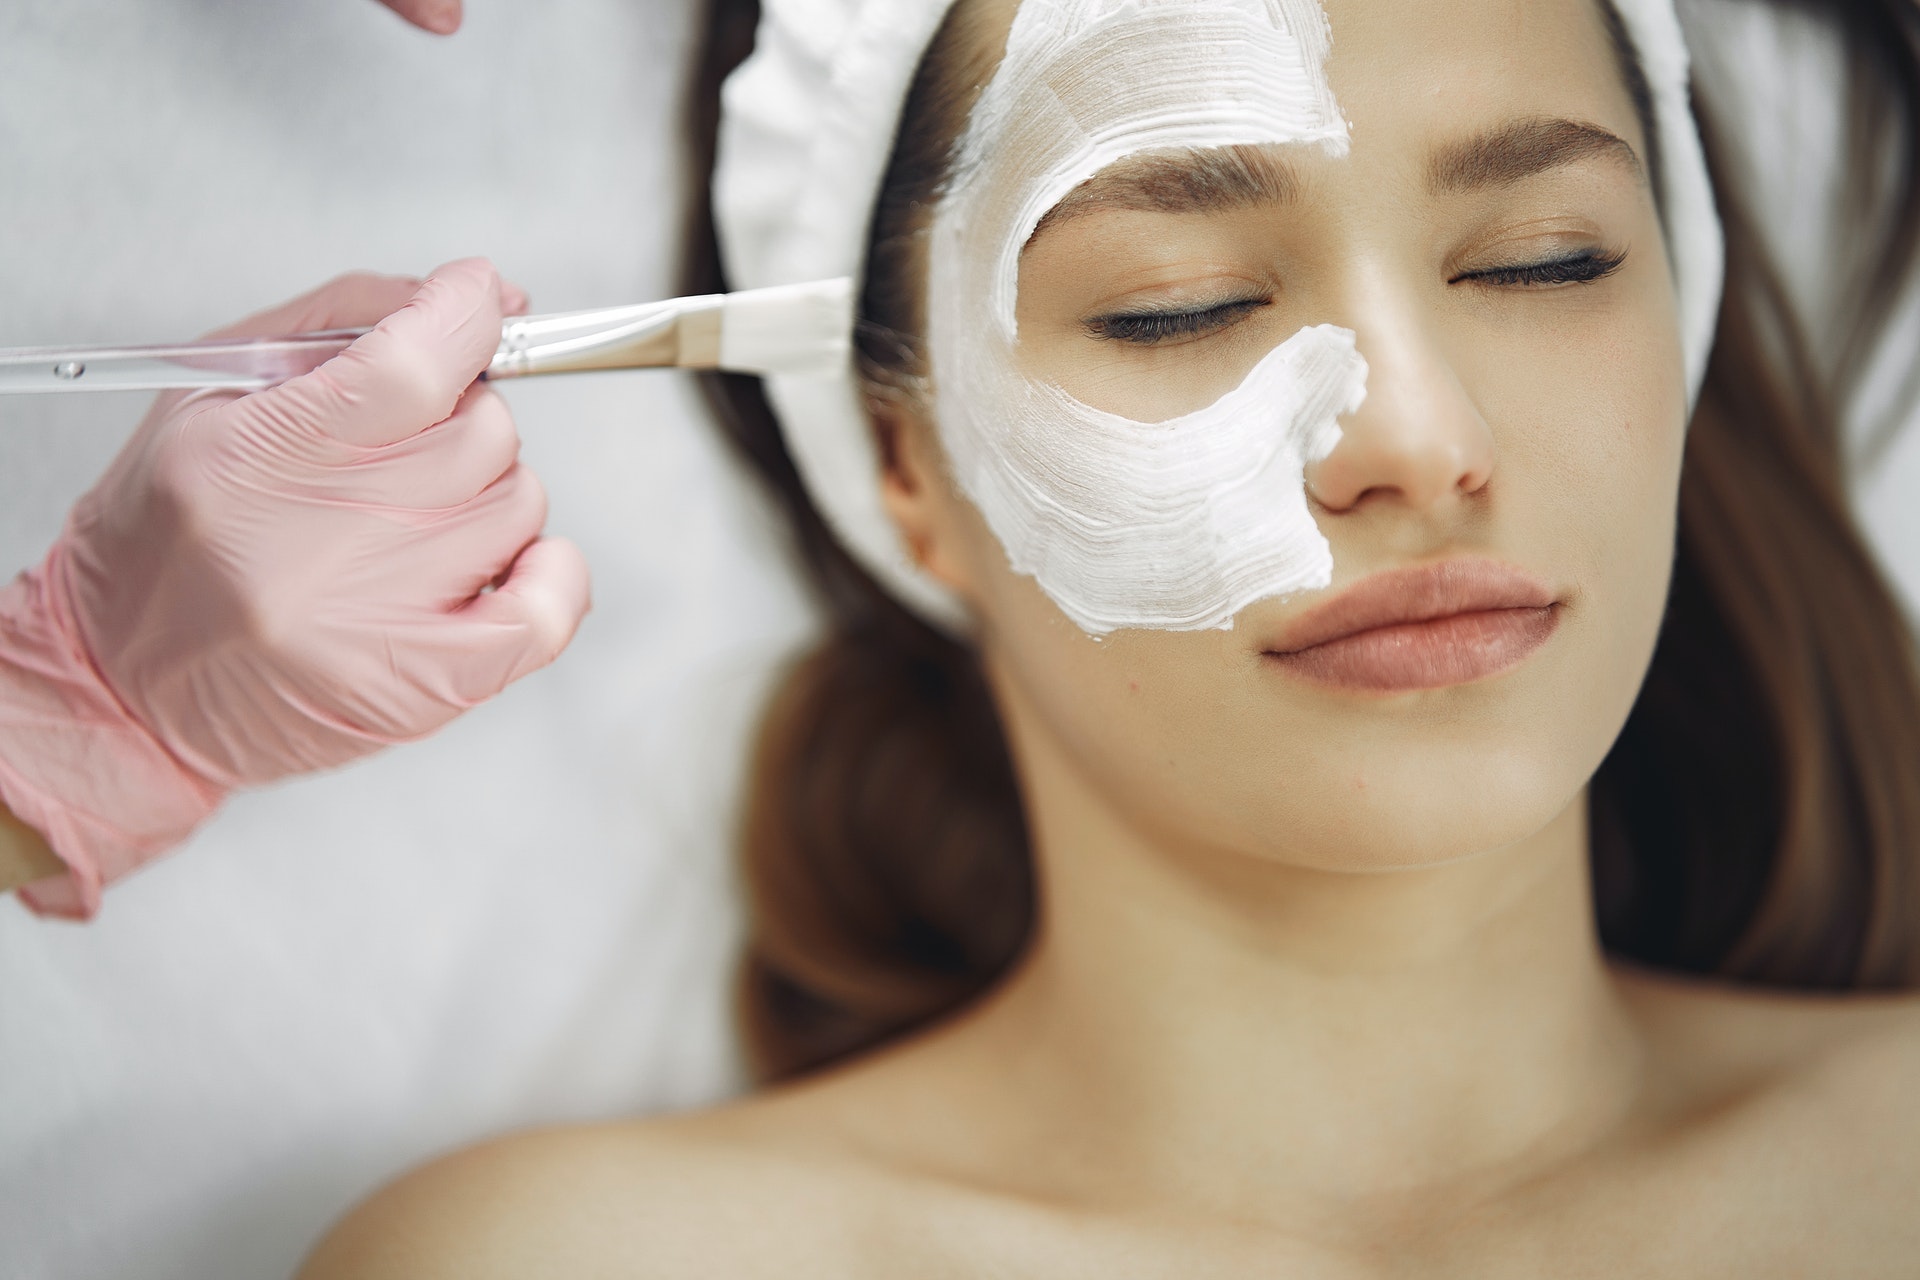 Imagem de uma mulher recebendo um tratamento estético com um creme branco no rosto. Imagem ilustrativa texto franquias para investir sem medo.